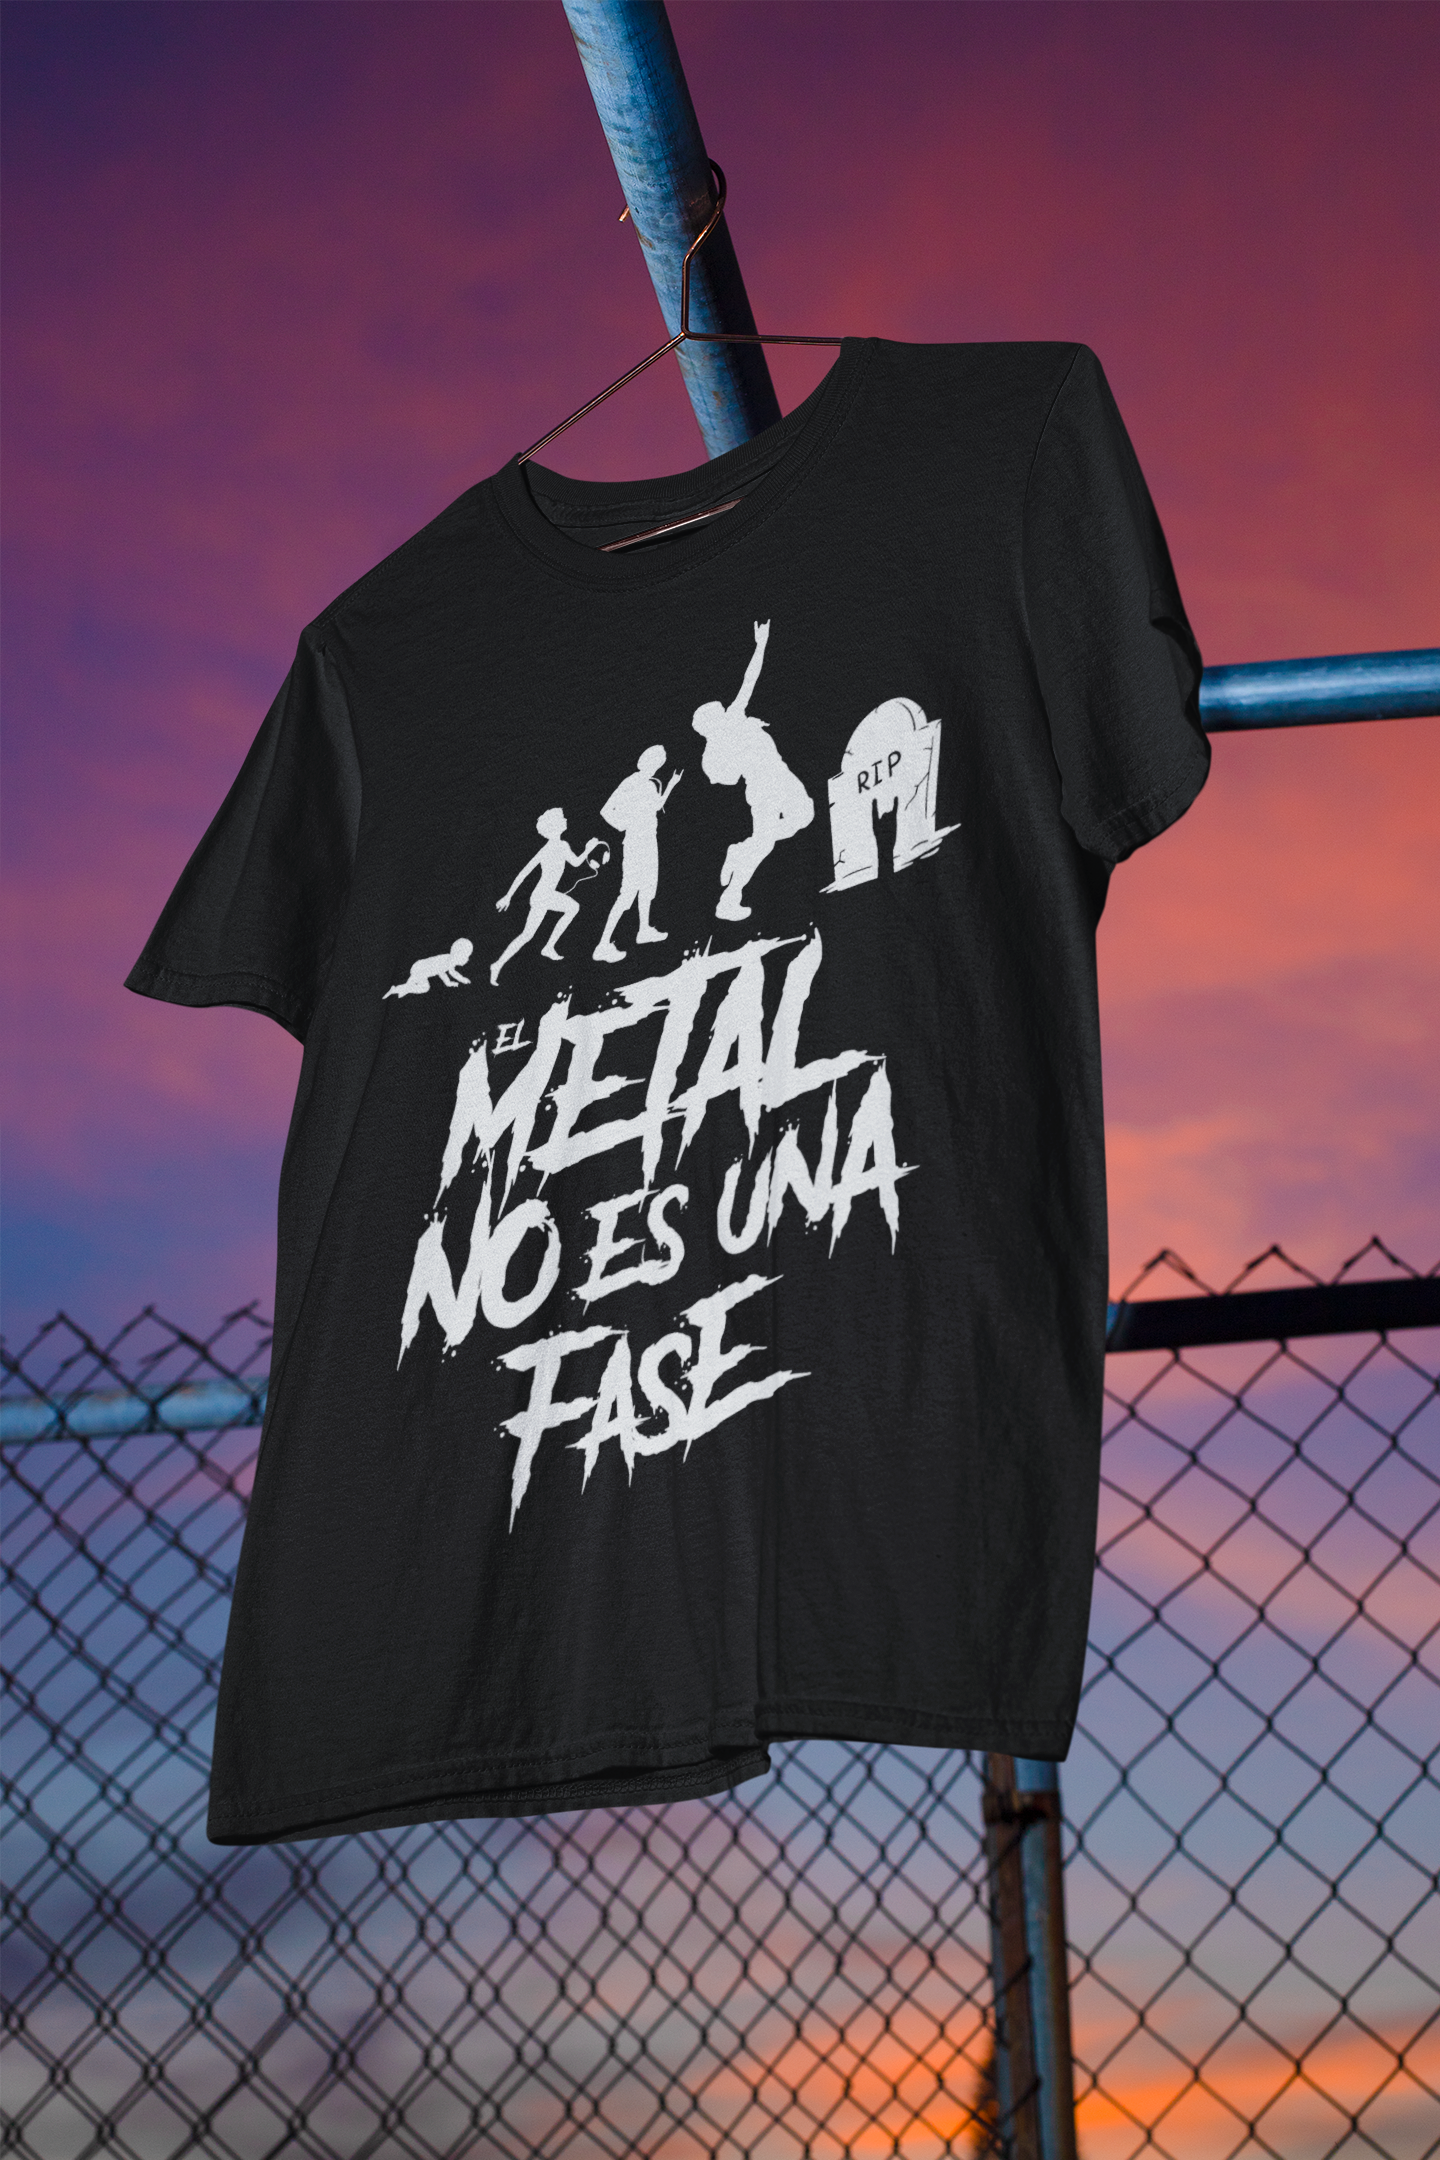 Camiseta Mi otra camiseta negra está sucia – Metal Life